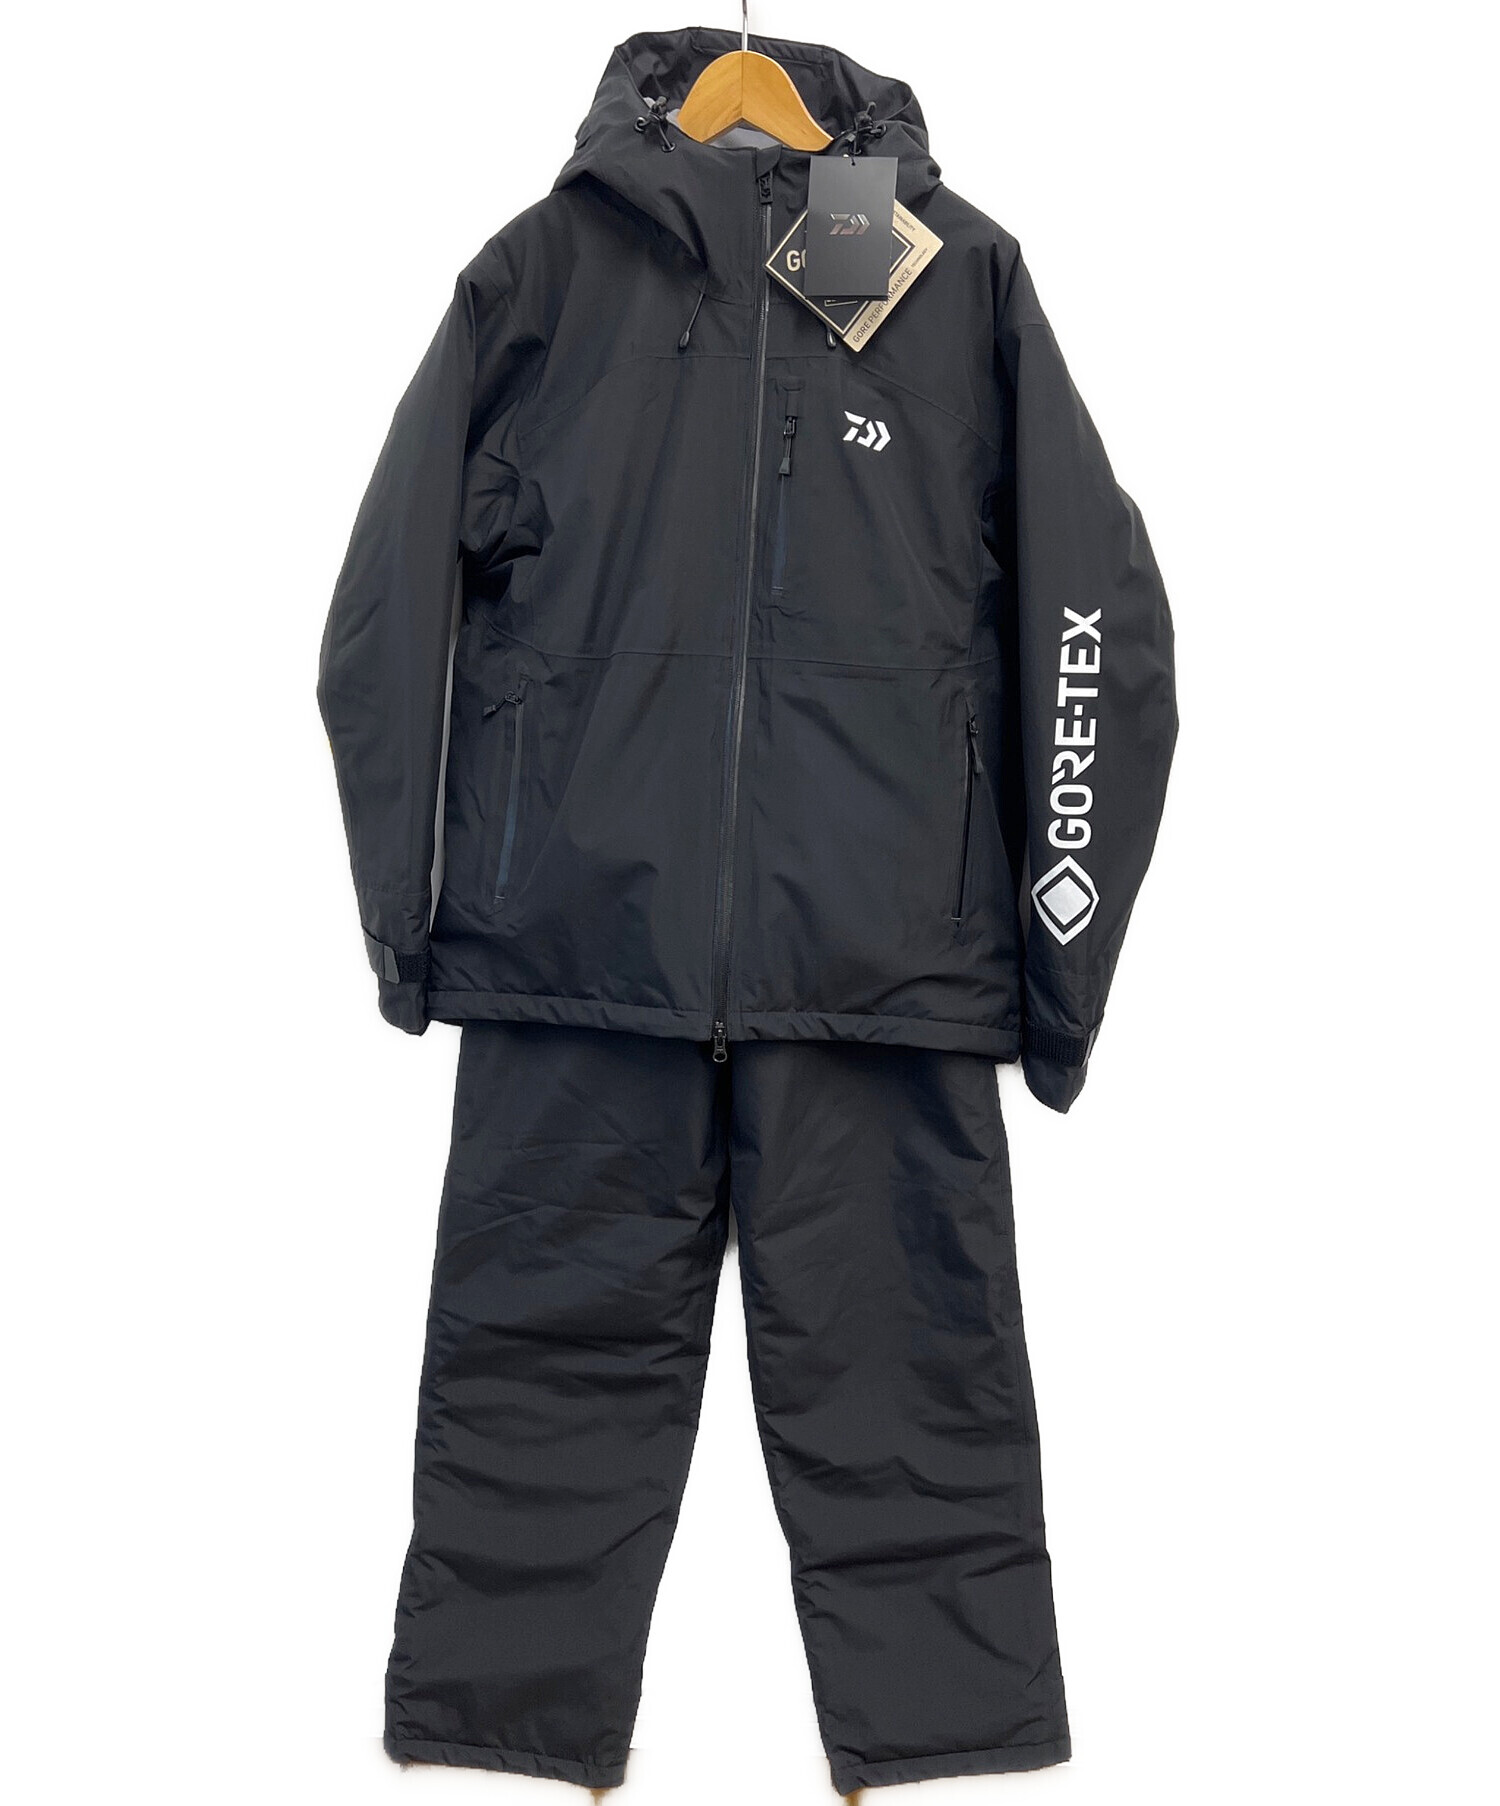 DAIWA (ダイワ) ゴアテックスプロダクトウィンタースーツ ブラック サイズ:M 未使用品